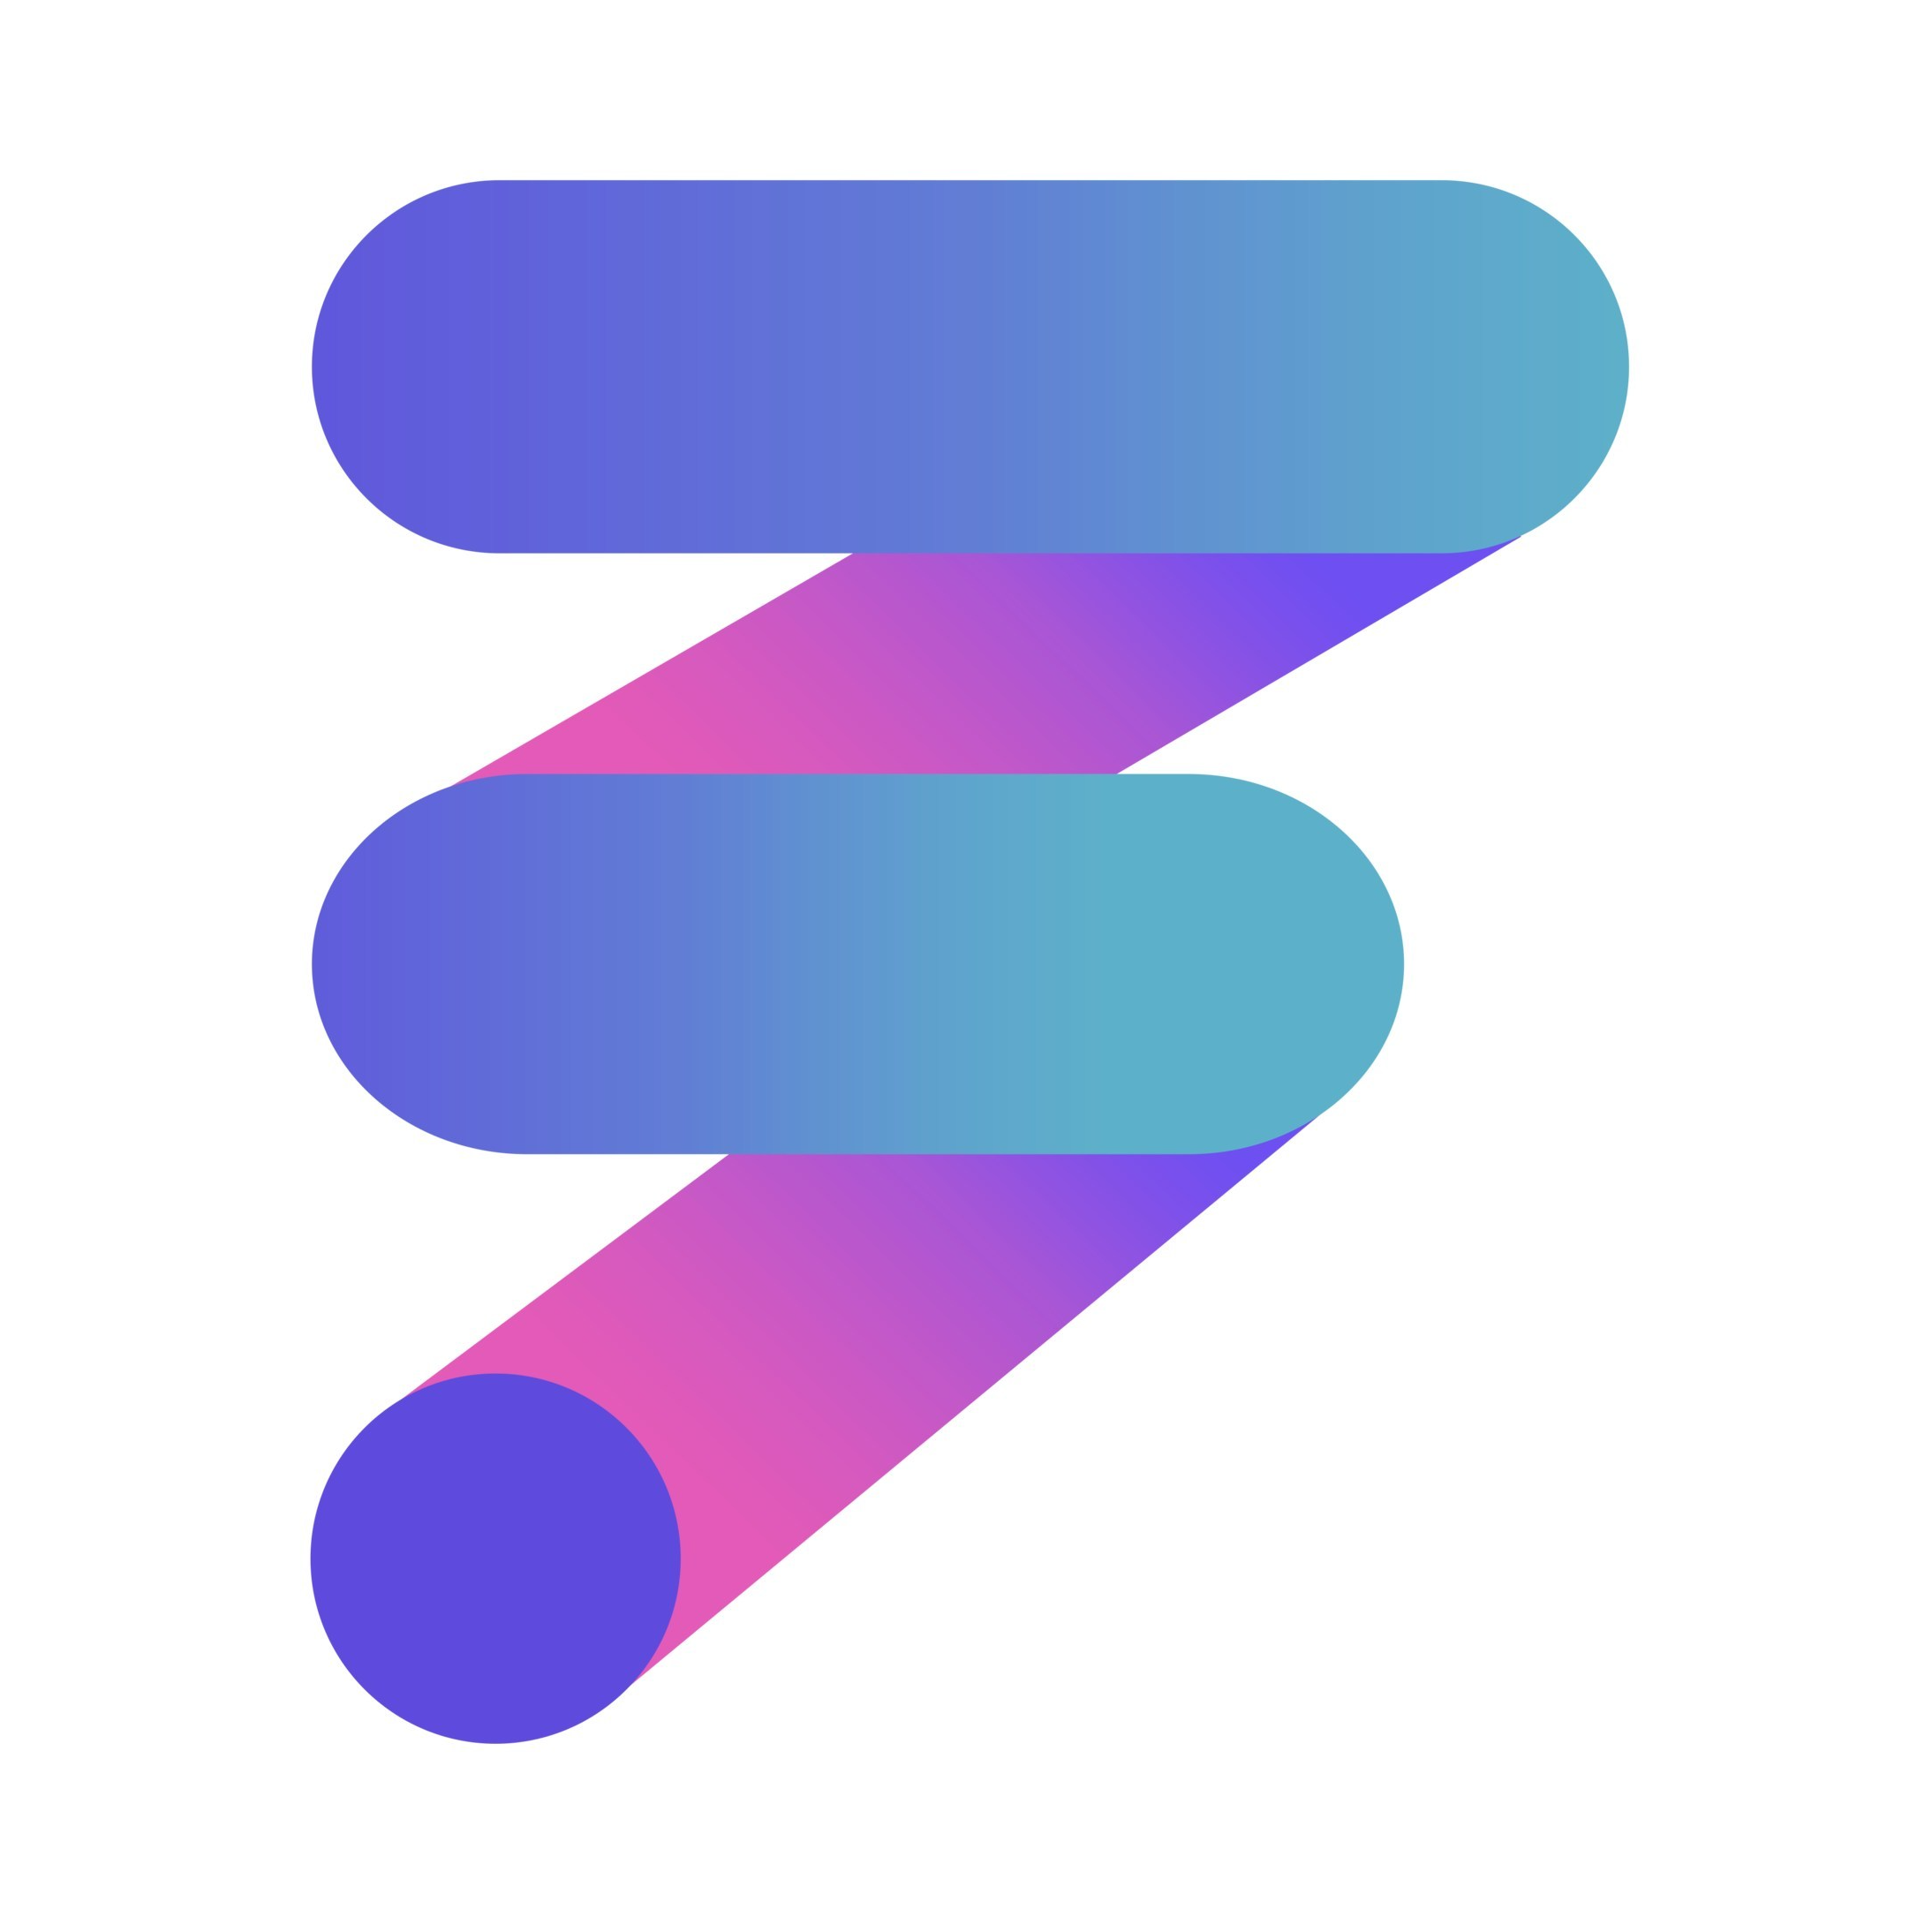 FitOn Logo